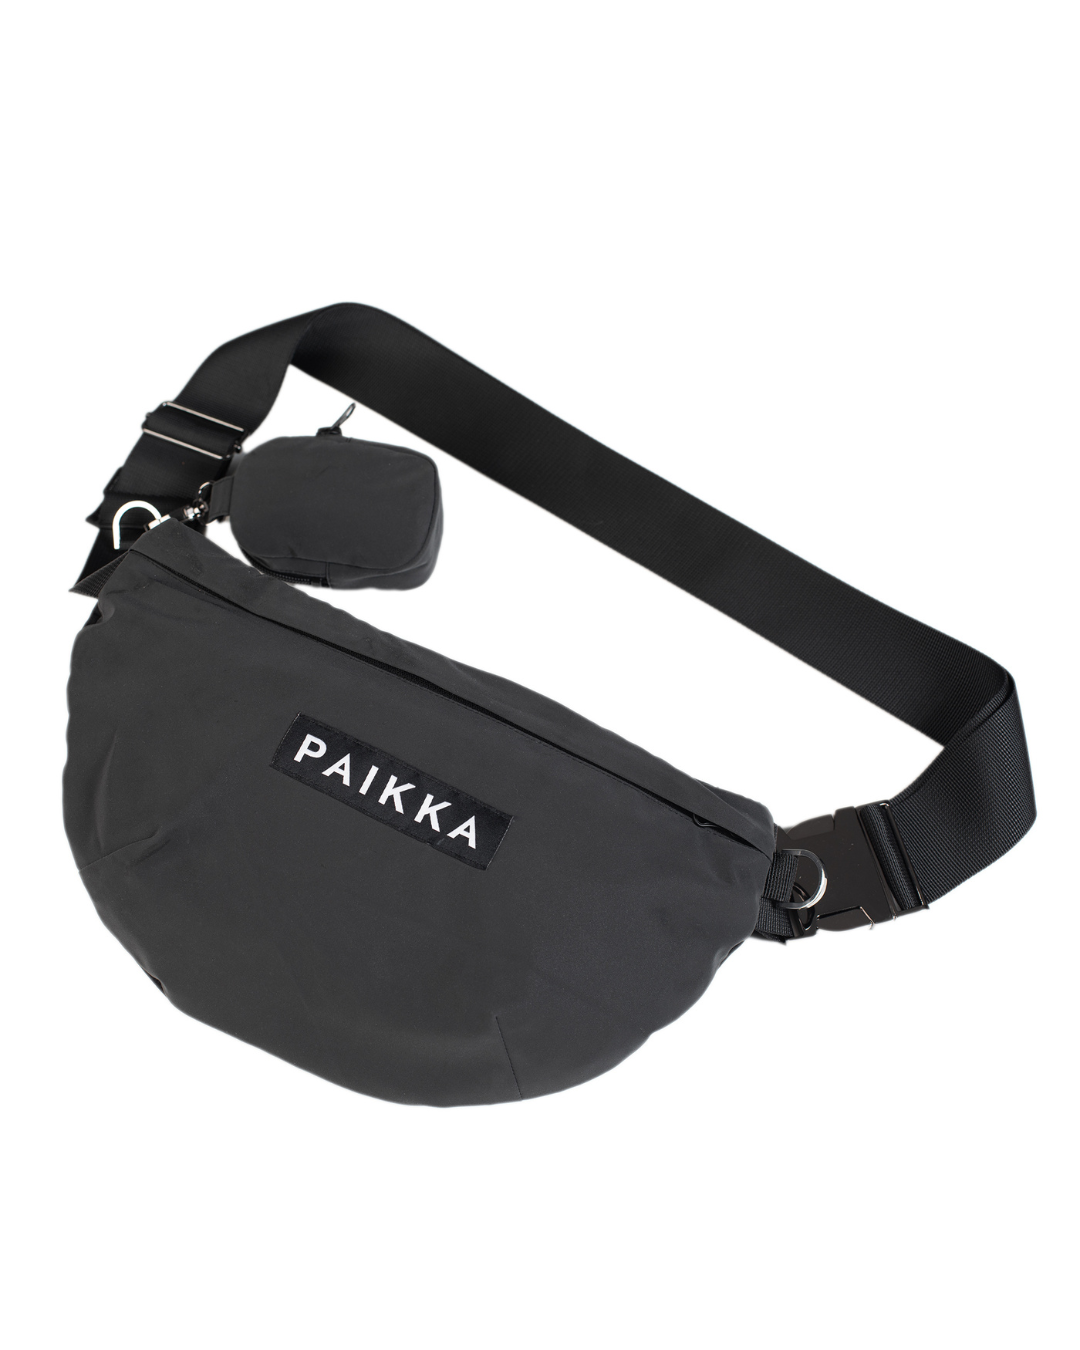 PAIKKA Visibility Treat Bag Dark